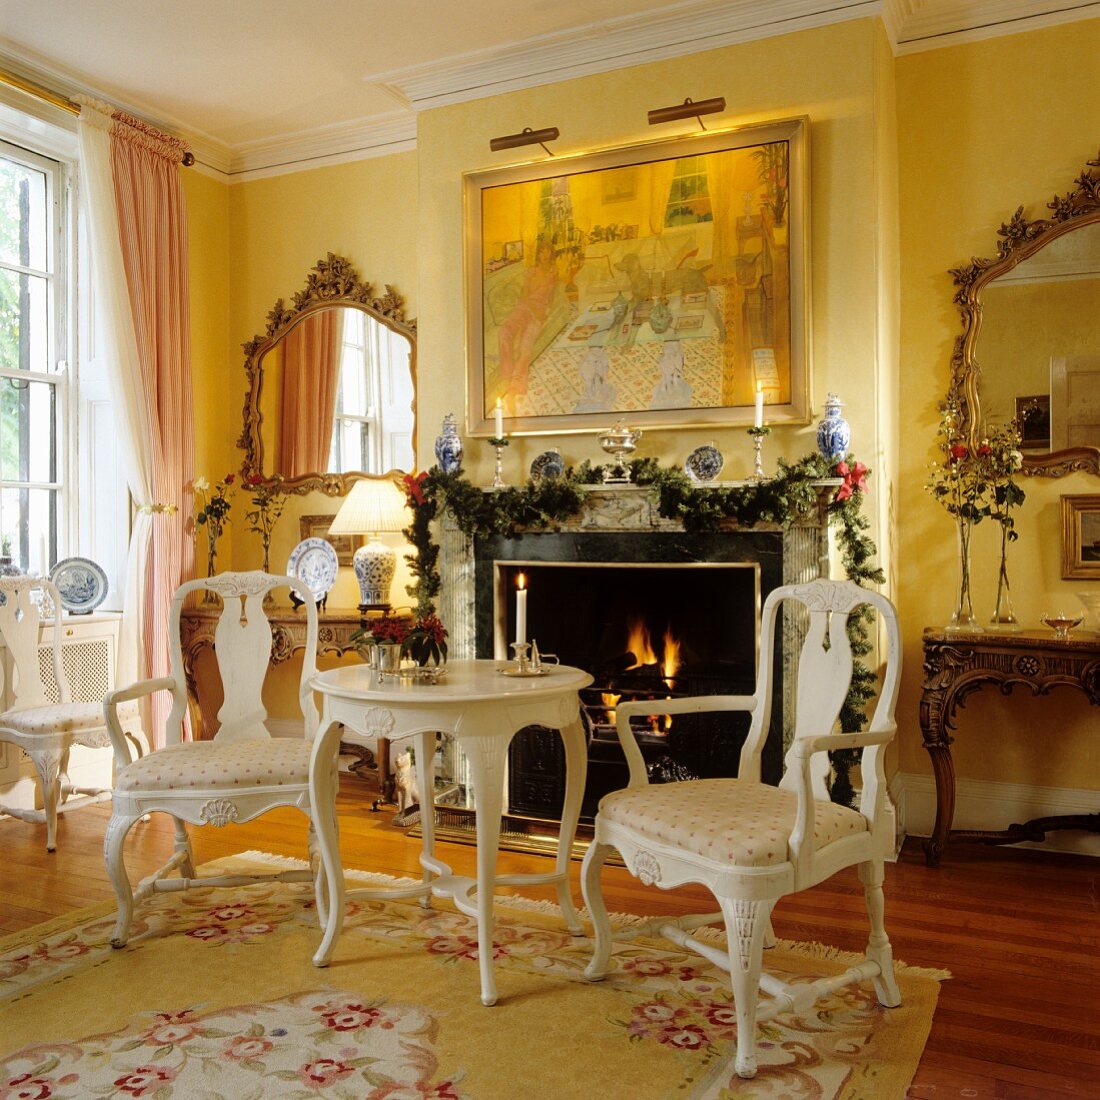 Historisches Wohnzimmer mit Rokoko- und Barockmöbeln